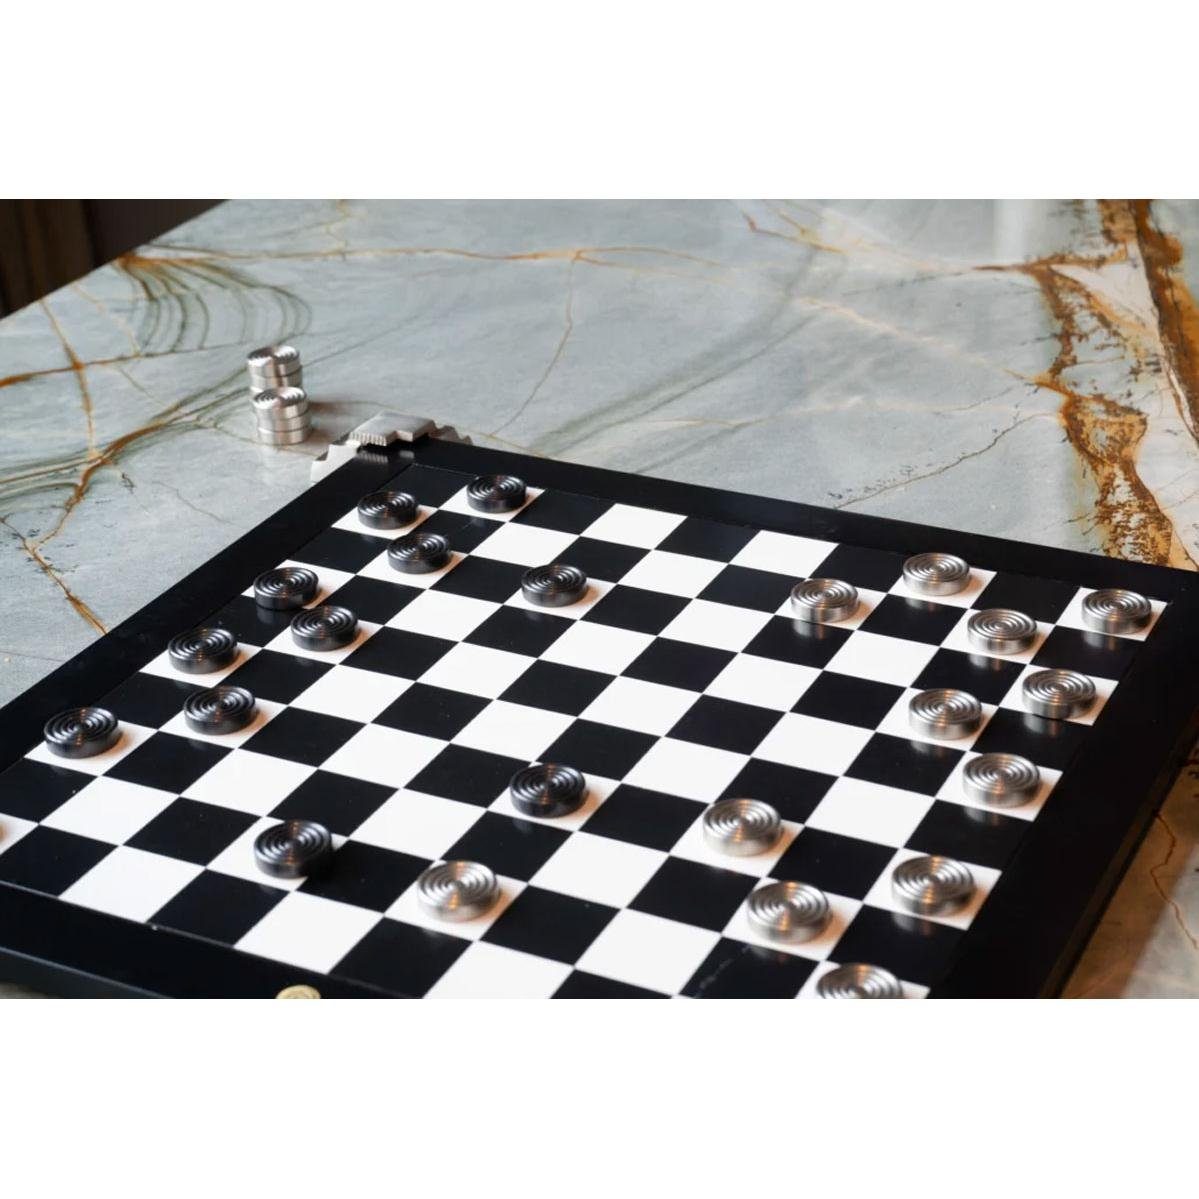 Dame MODELS für Spielbrett AUTHENTIC mit wendbares Dekofigur und (47x47cm) Metallfüßen Schach